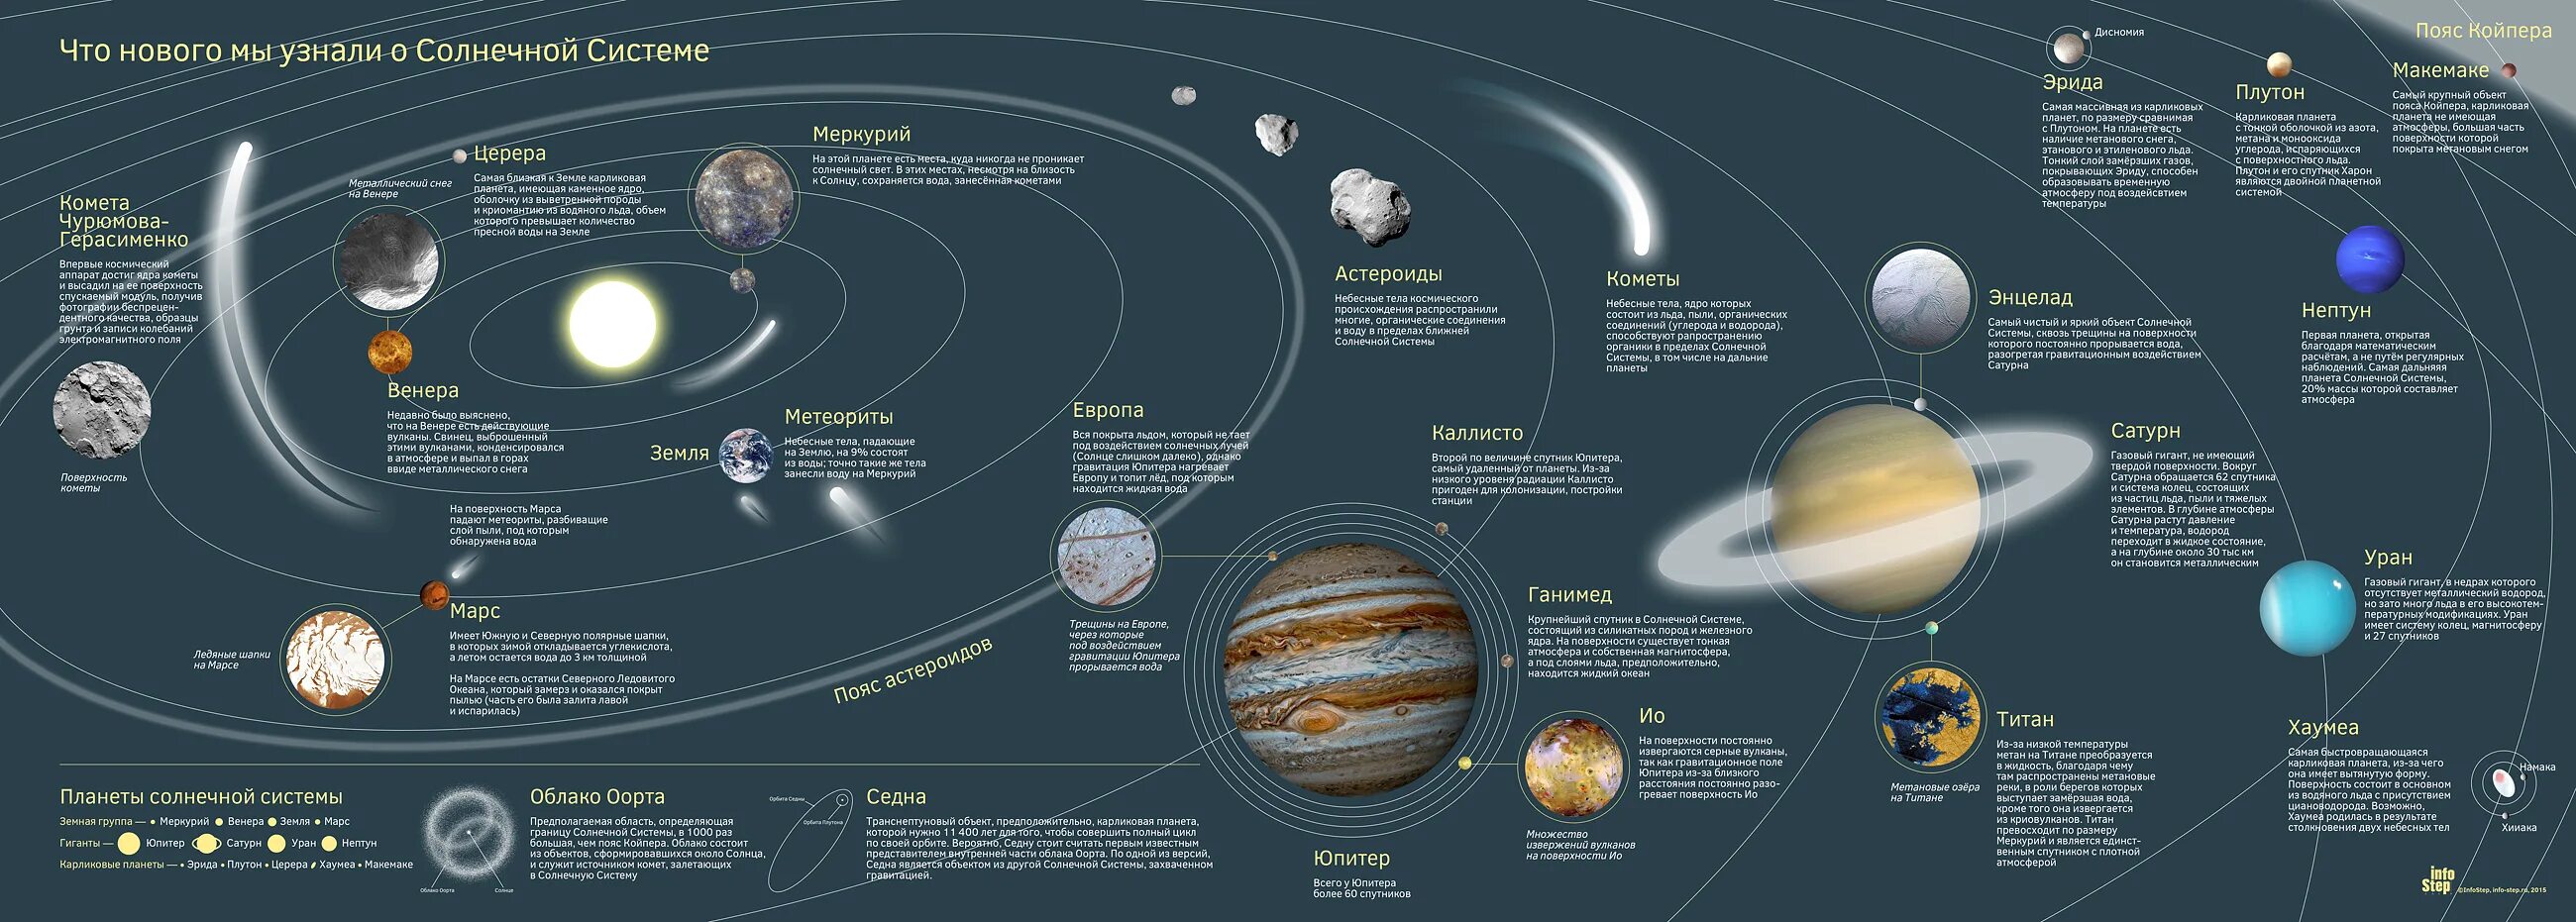 Солнечная система планеты по порядку от солнца со спутниками. Вся Солнечная система с карликовыми планетами и спутниками кометами. Солнечная система это планеты солнечной системы со спутниками. Строение солнечной системы по порядку.